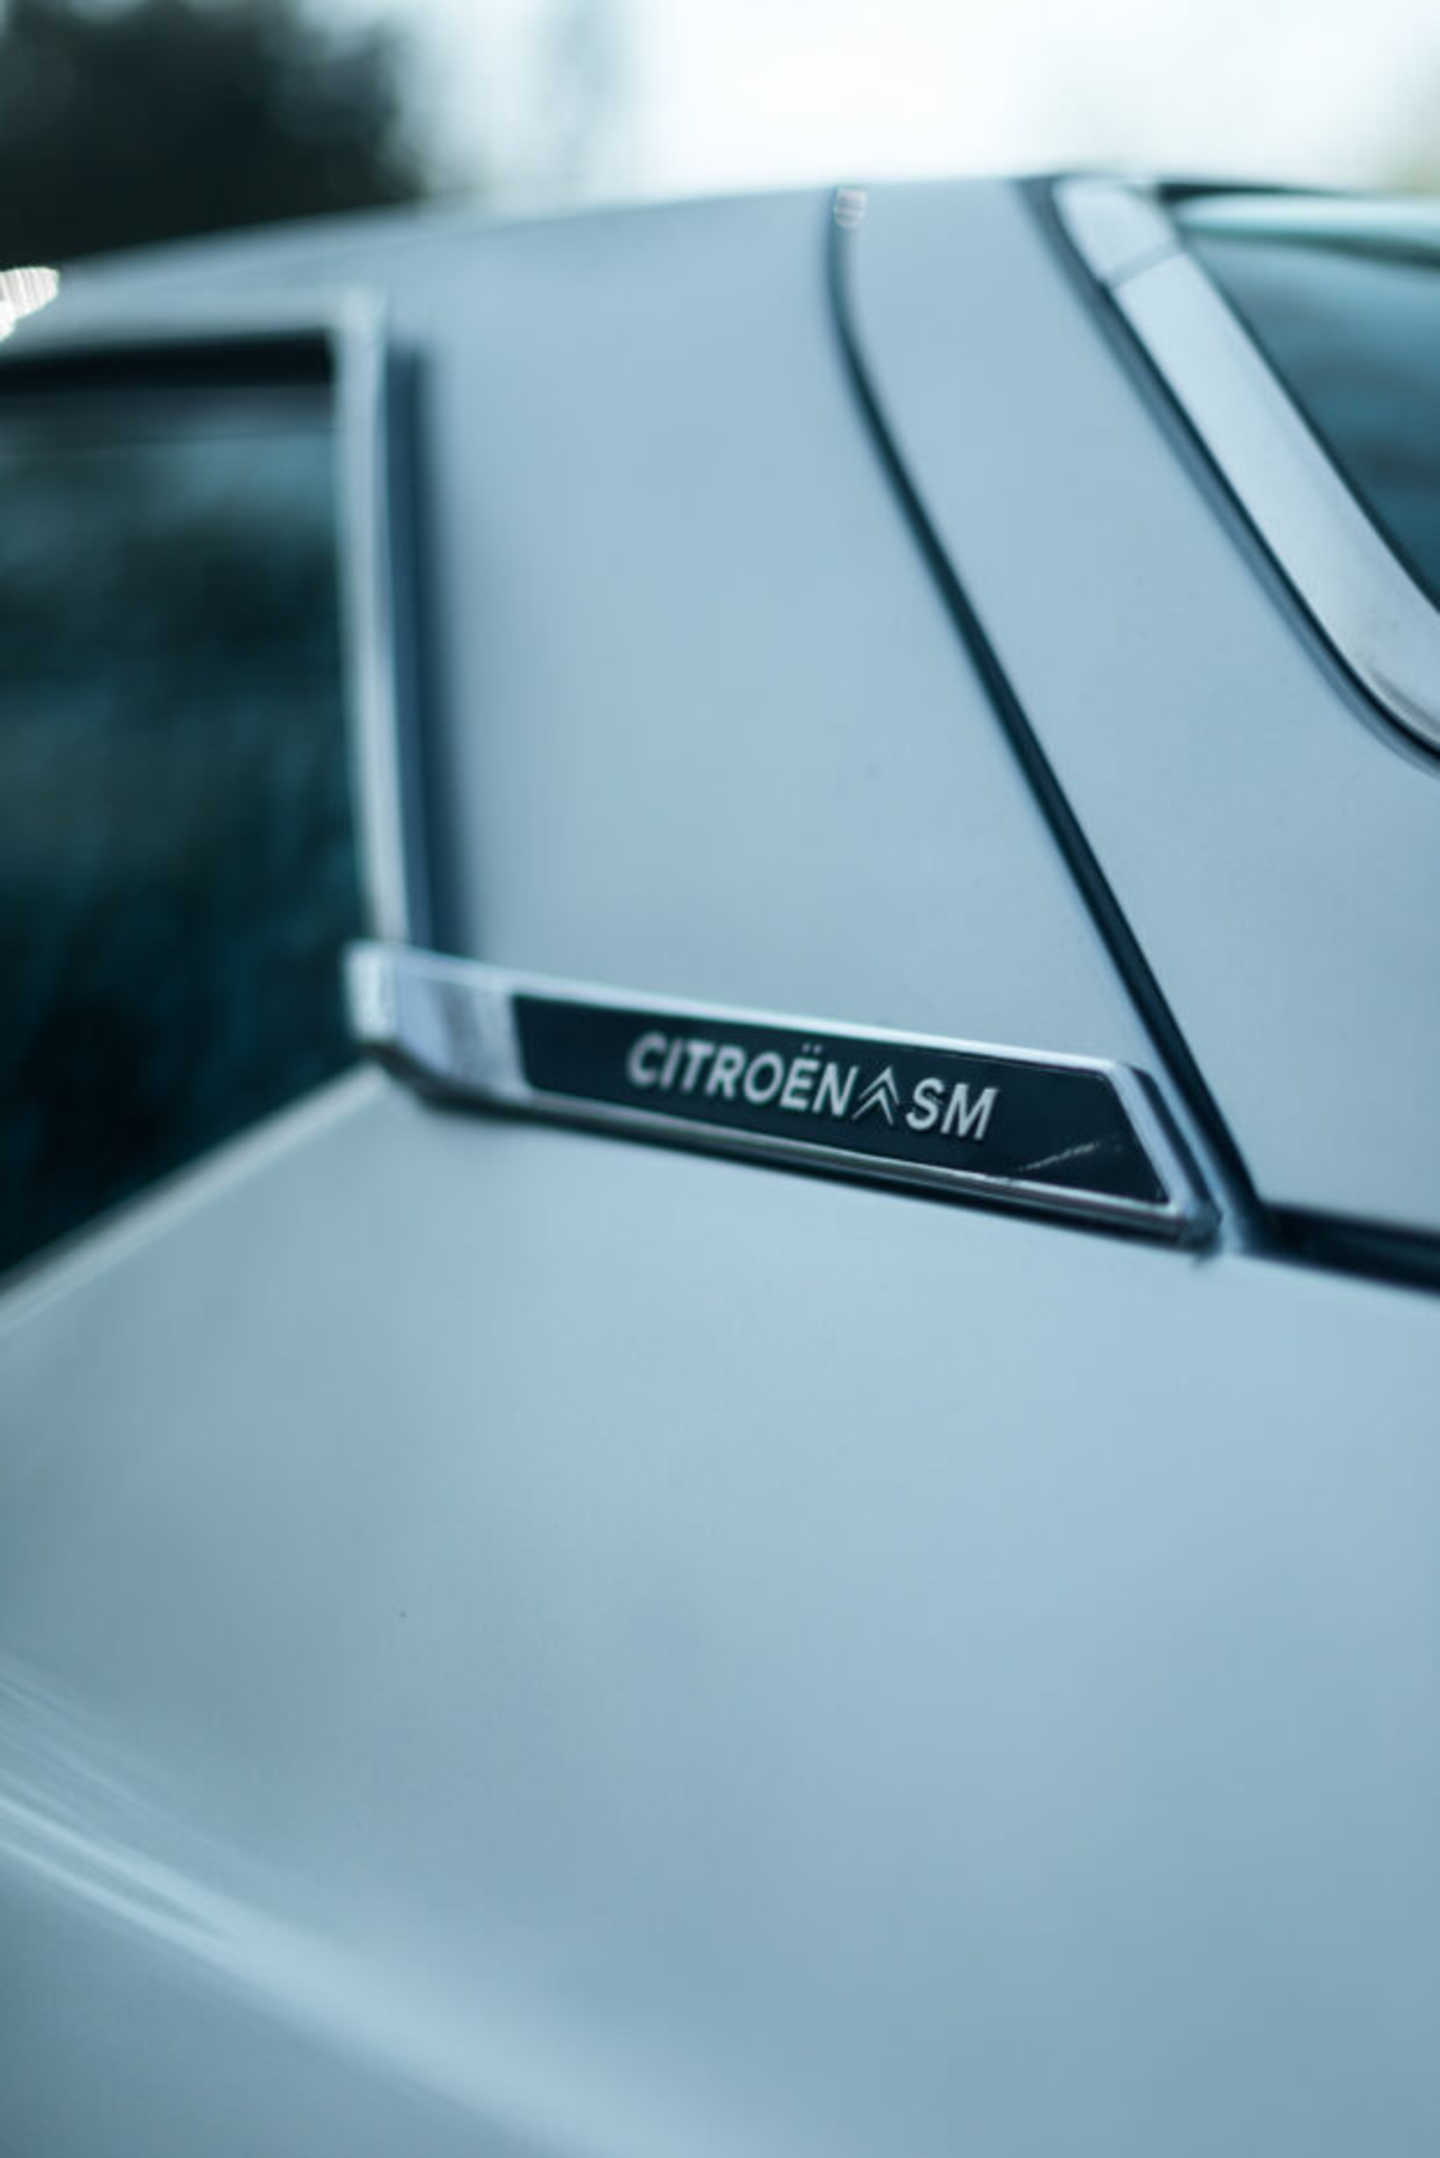 Citroën SM zoom sur la porte arrière